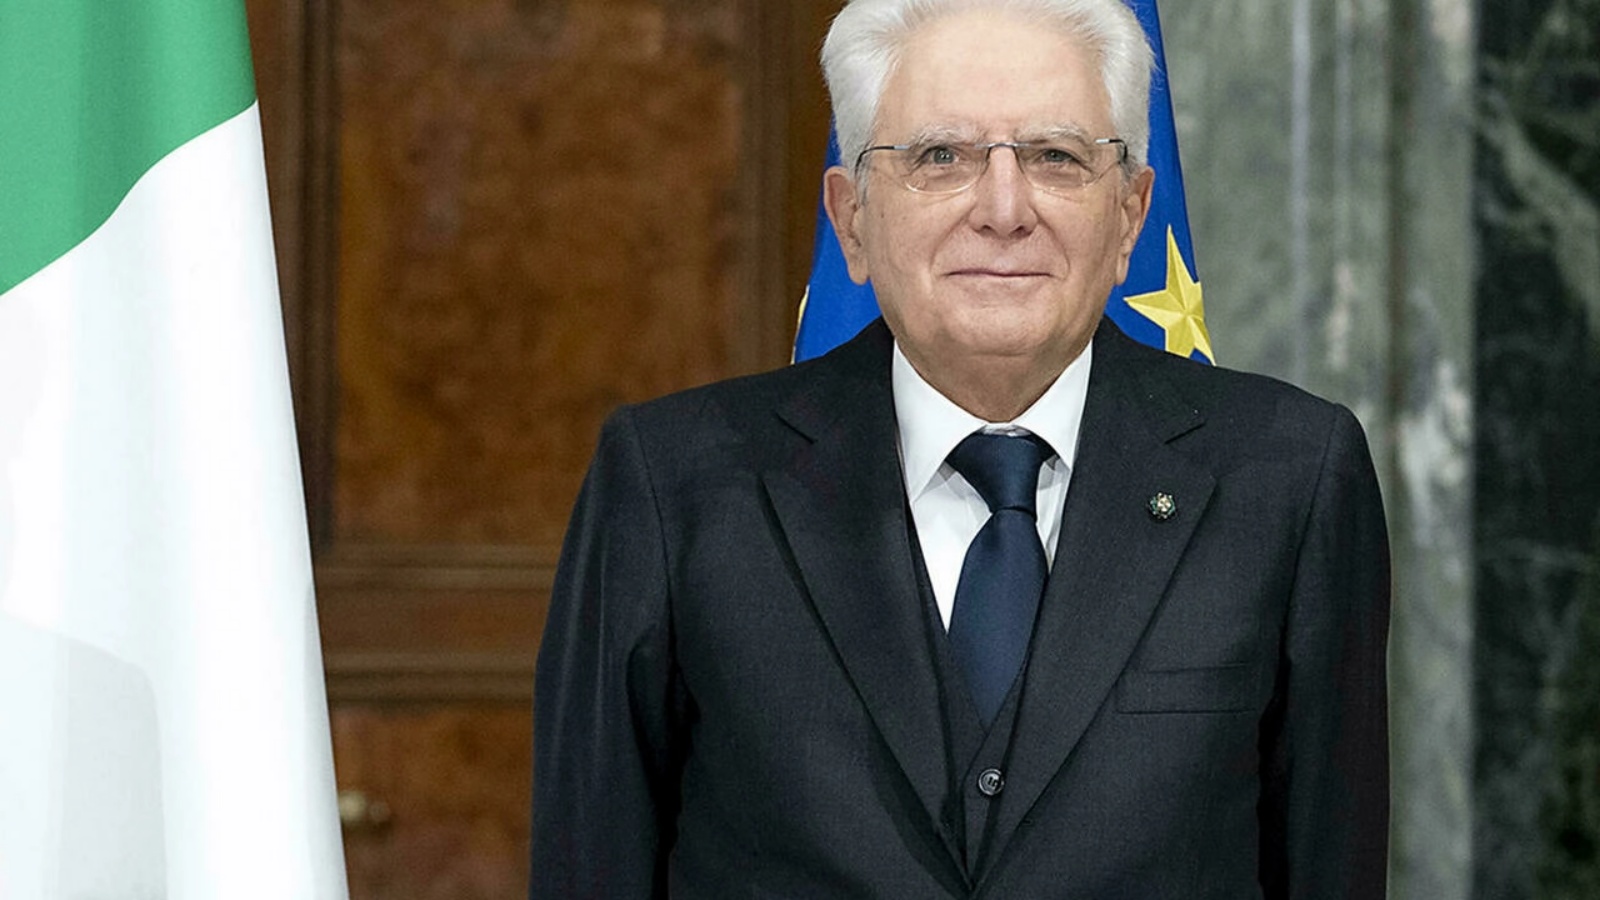 الرئيس الإيطالي سيرجيو ماتاريلا في 29 أكتوبر 2021 في قصر كويرينال الرئاسي في روما